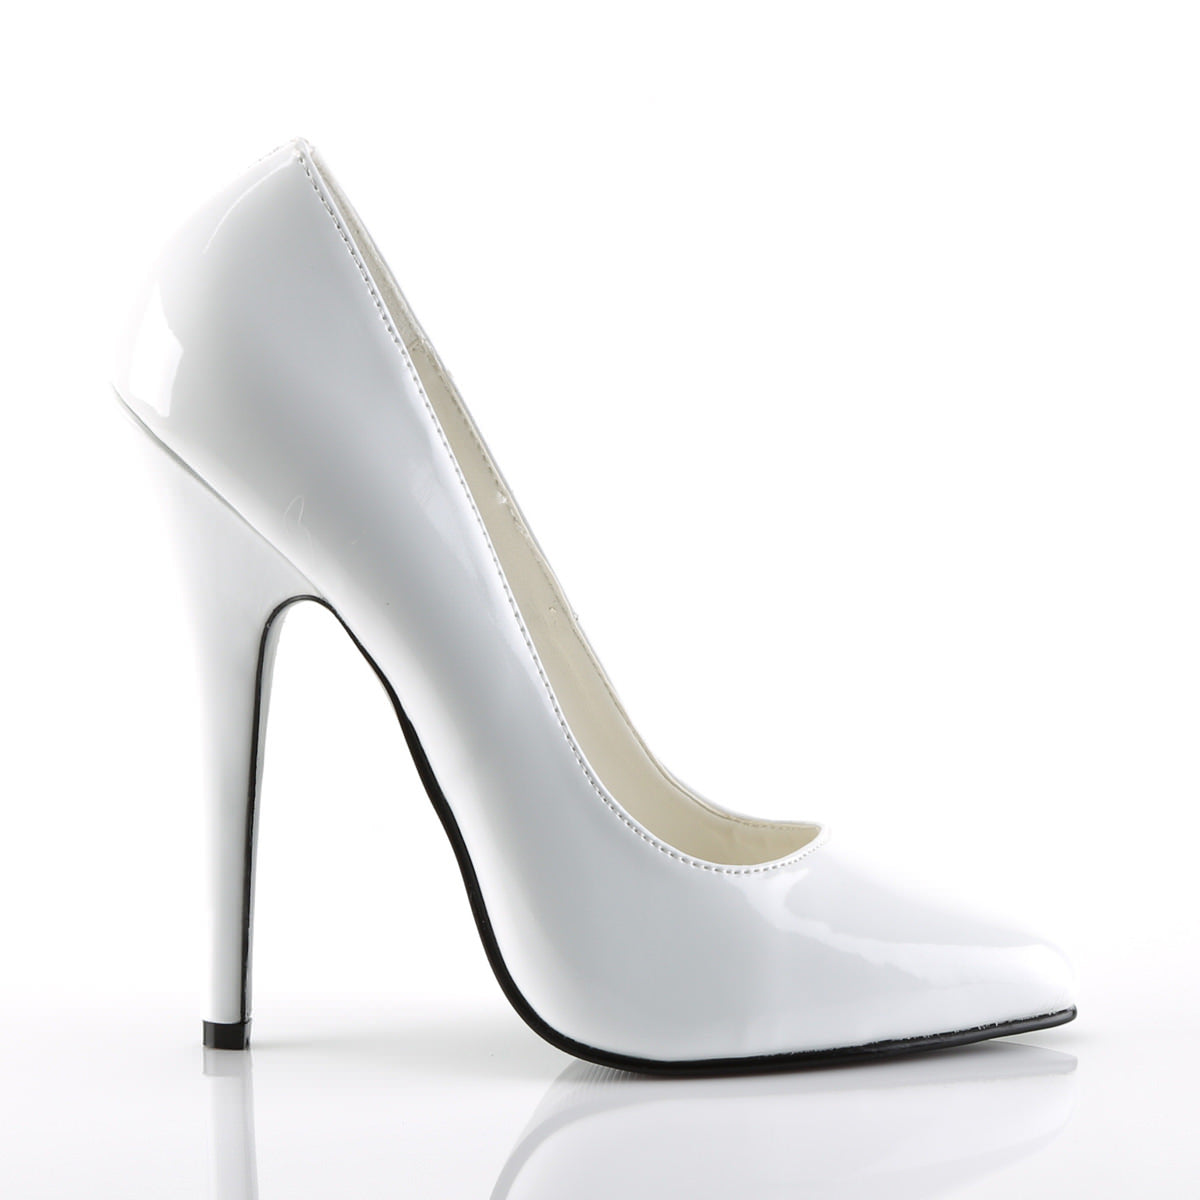 6 Inch Heel DOMINA-420 White Patent